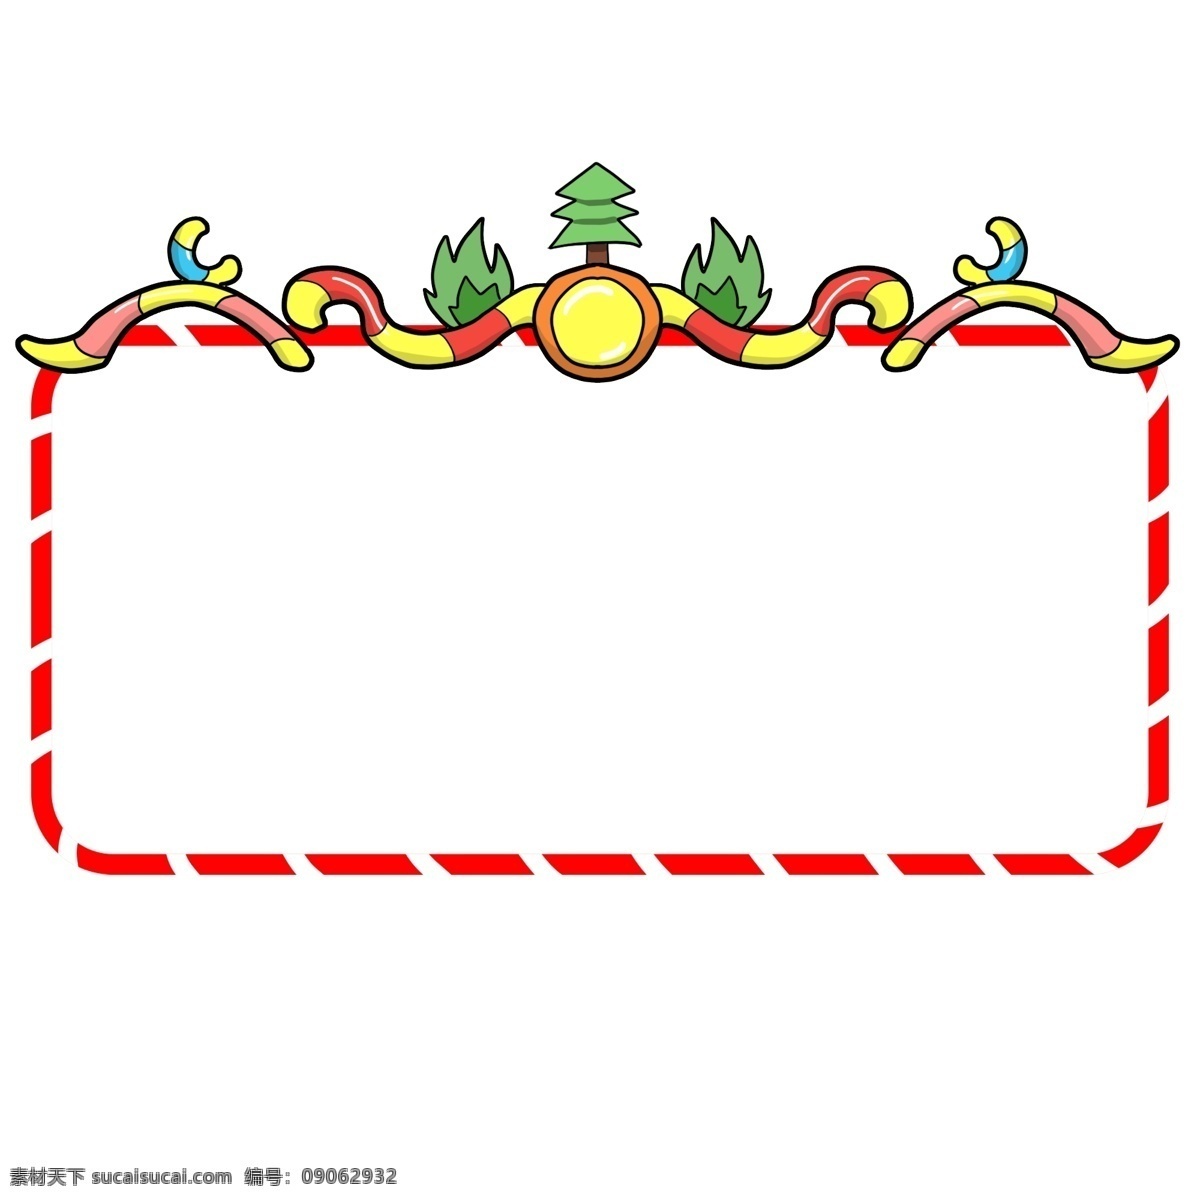 圣诞节 绿色 圣诞树 边框 圣诞节边框 边框插画 手绘边框 手绘卡通 红色的边框 绿色的圣诞树 圣诞树边框